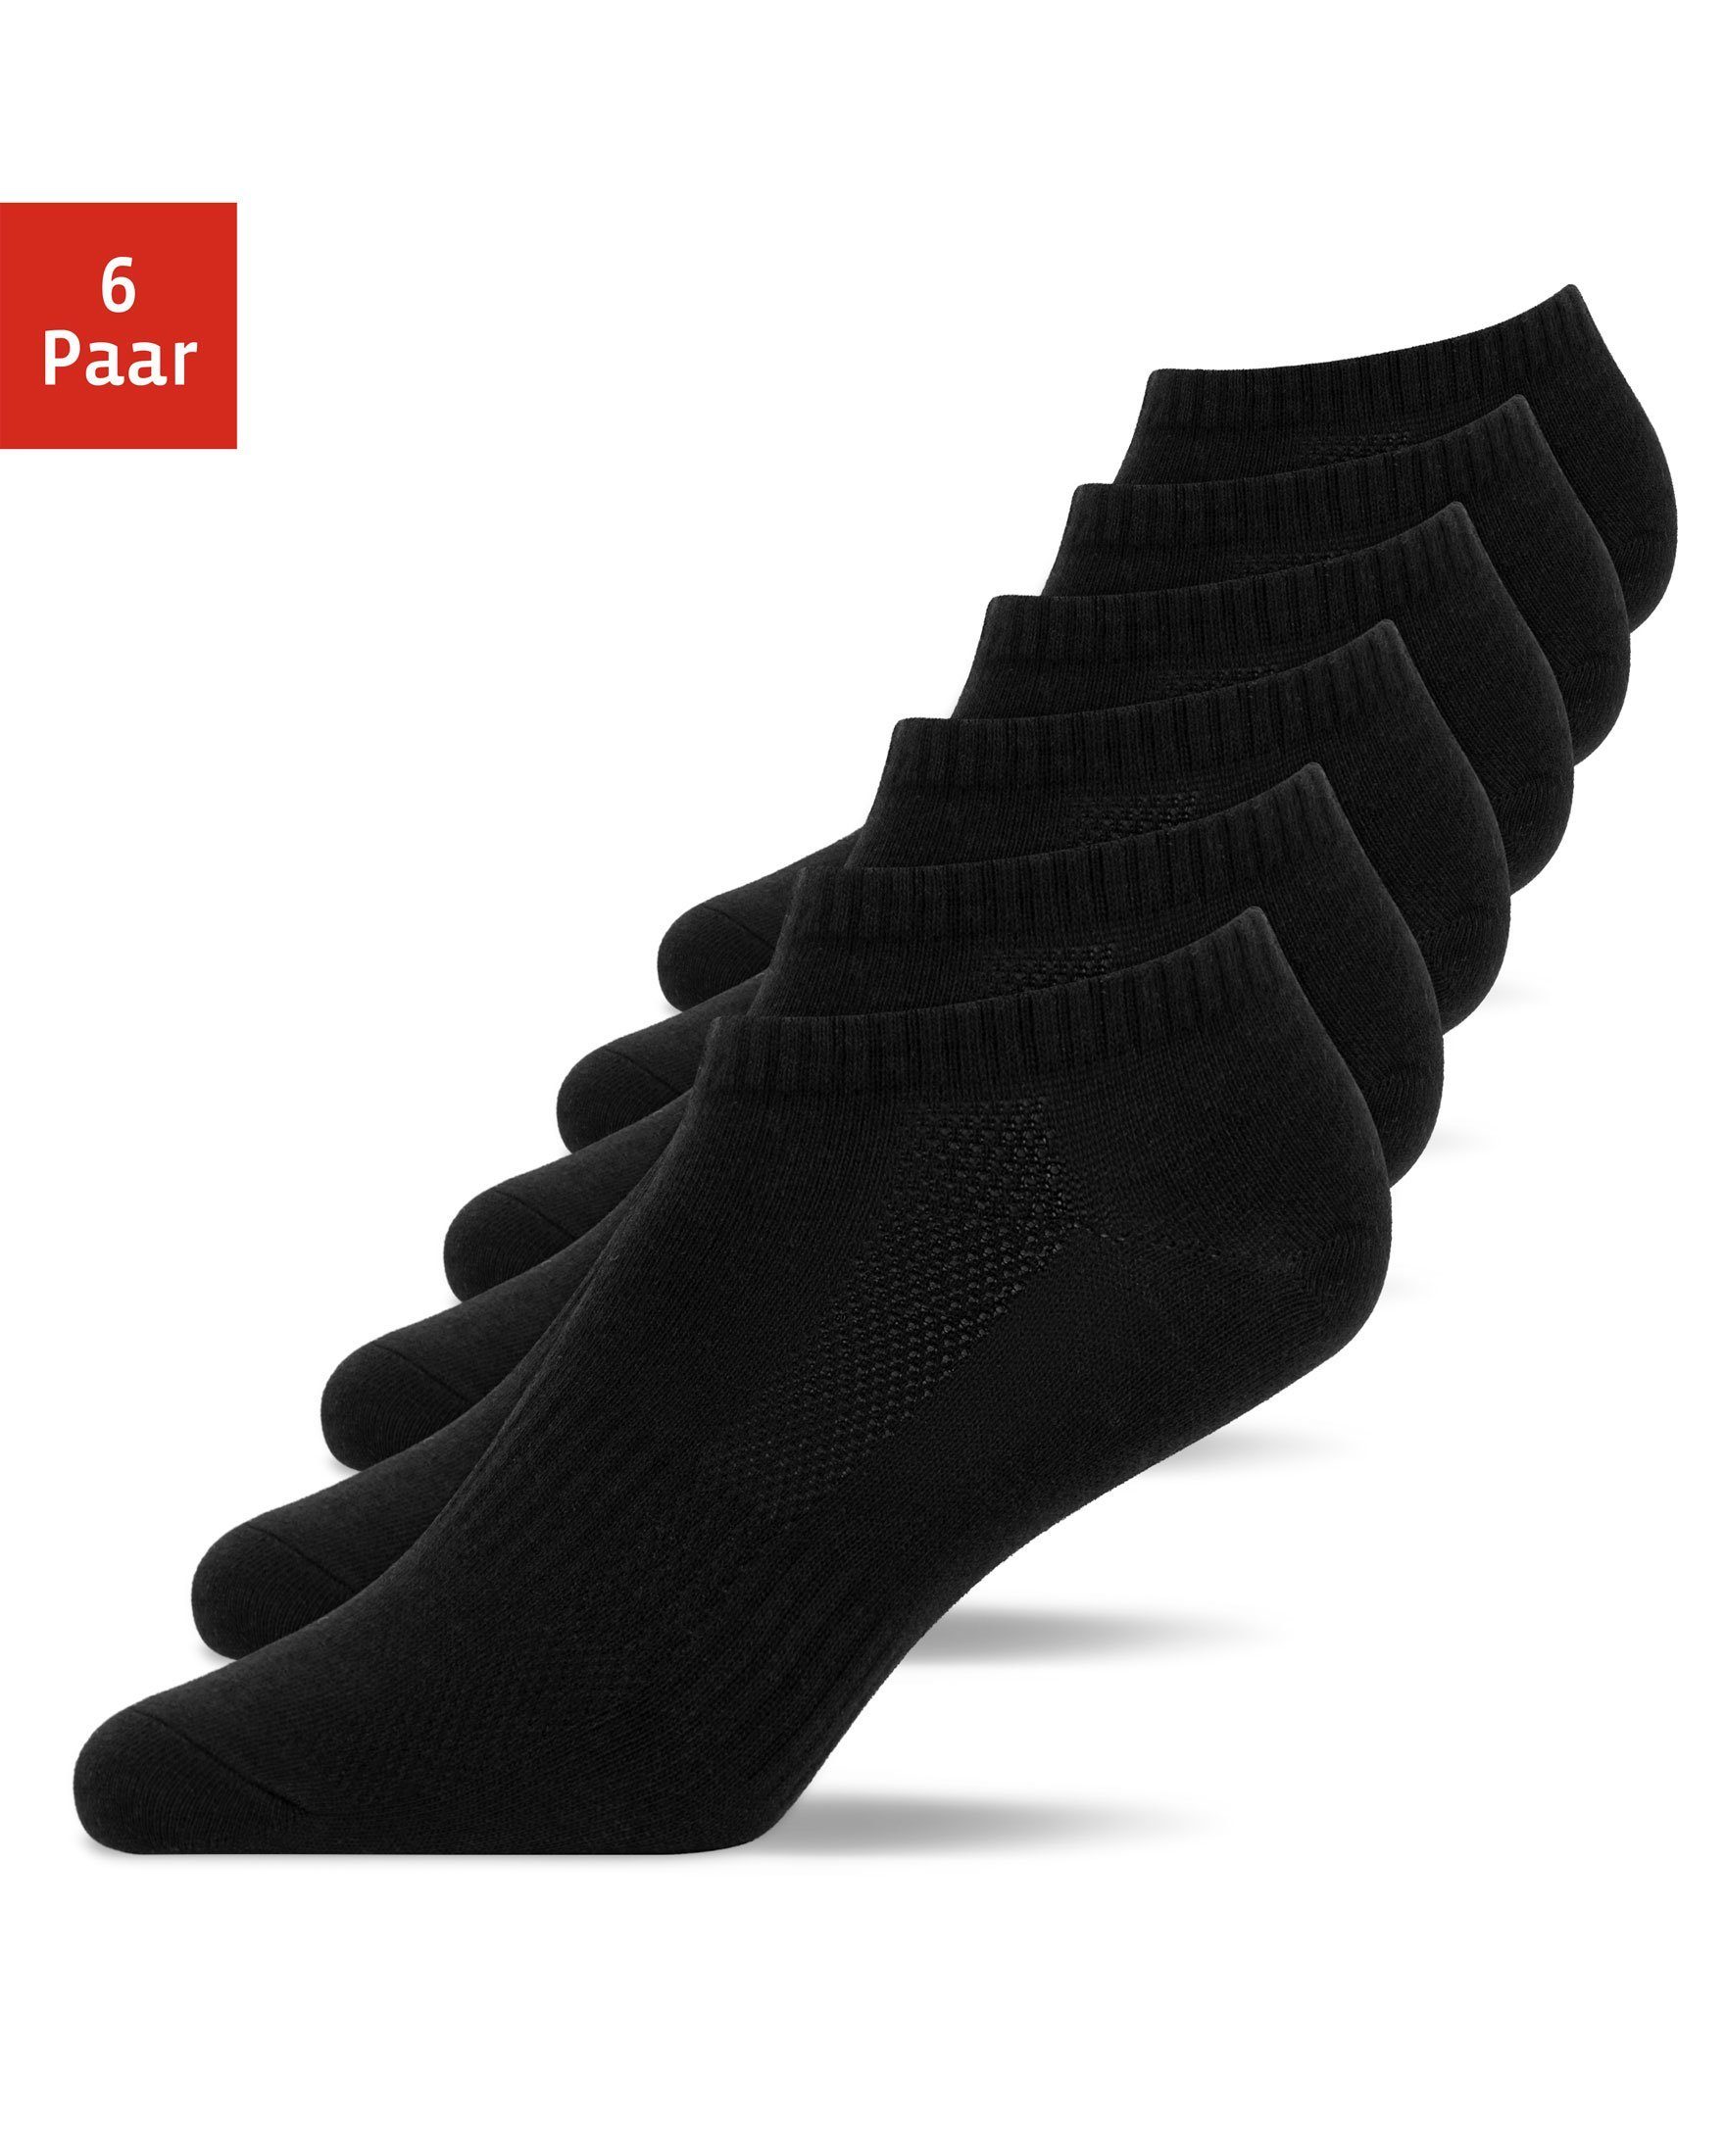 SNOCKS Sneakersocken kurze Шкарпетки für Herren & Damen (6-Paar) aus Bio-Baumwolle, für jeden Schuh und Anlass